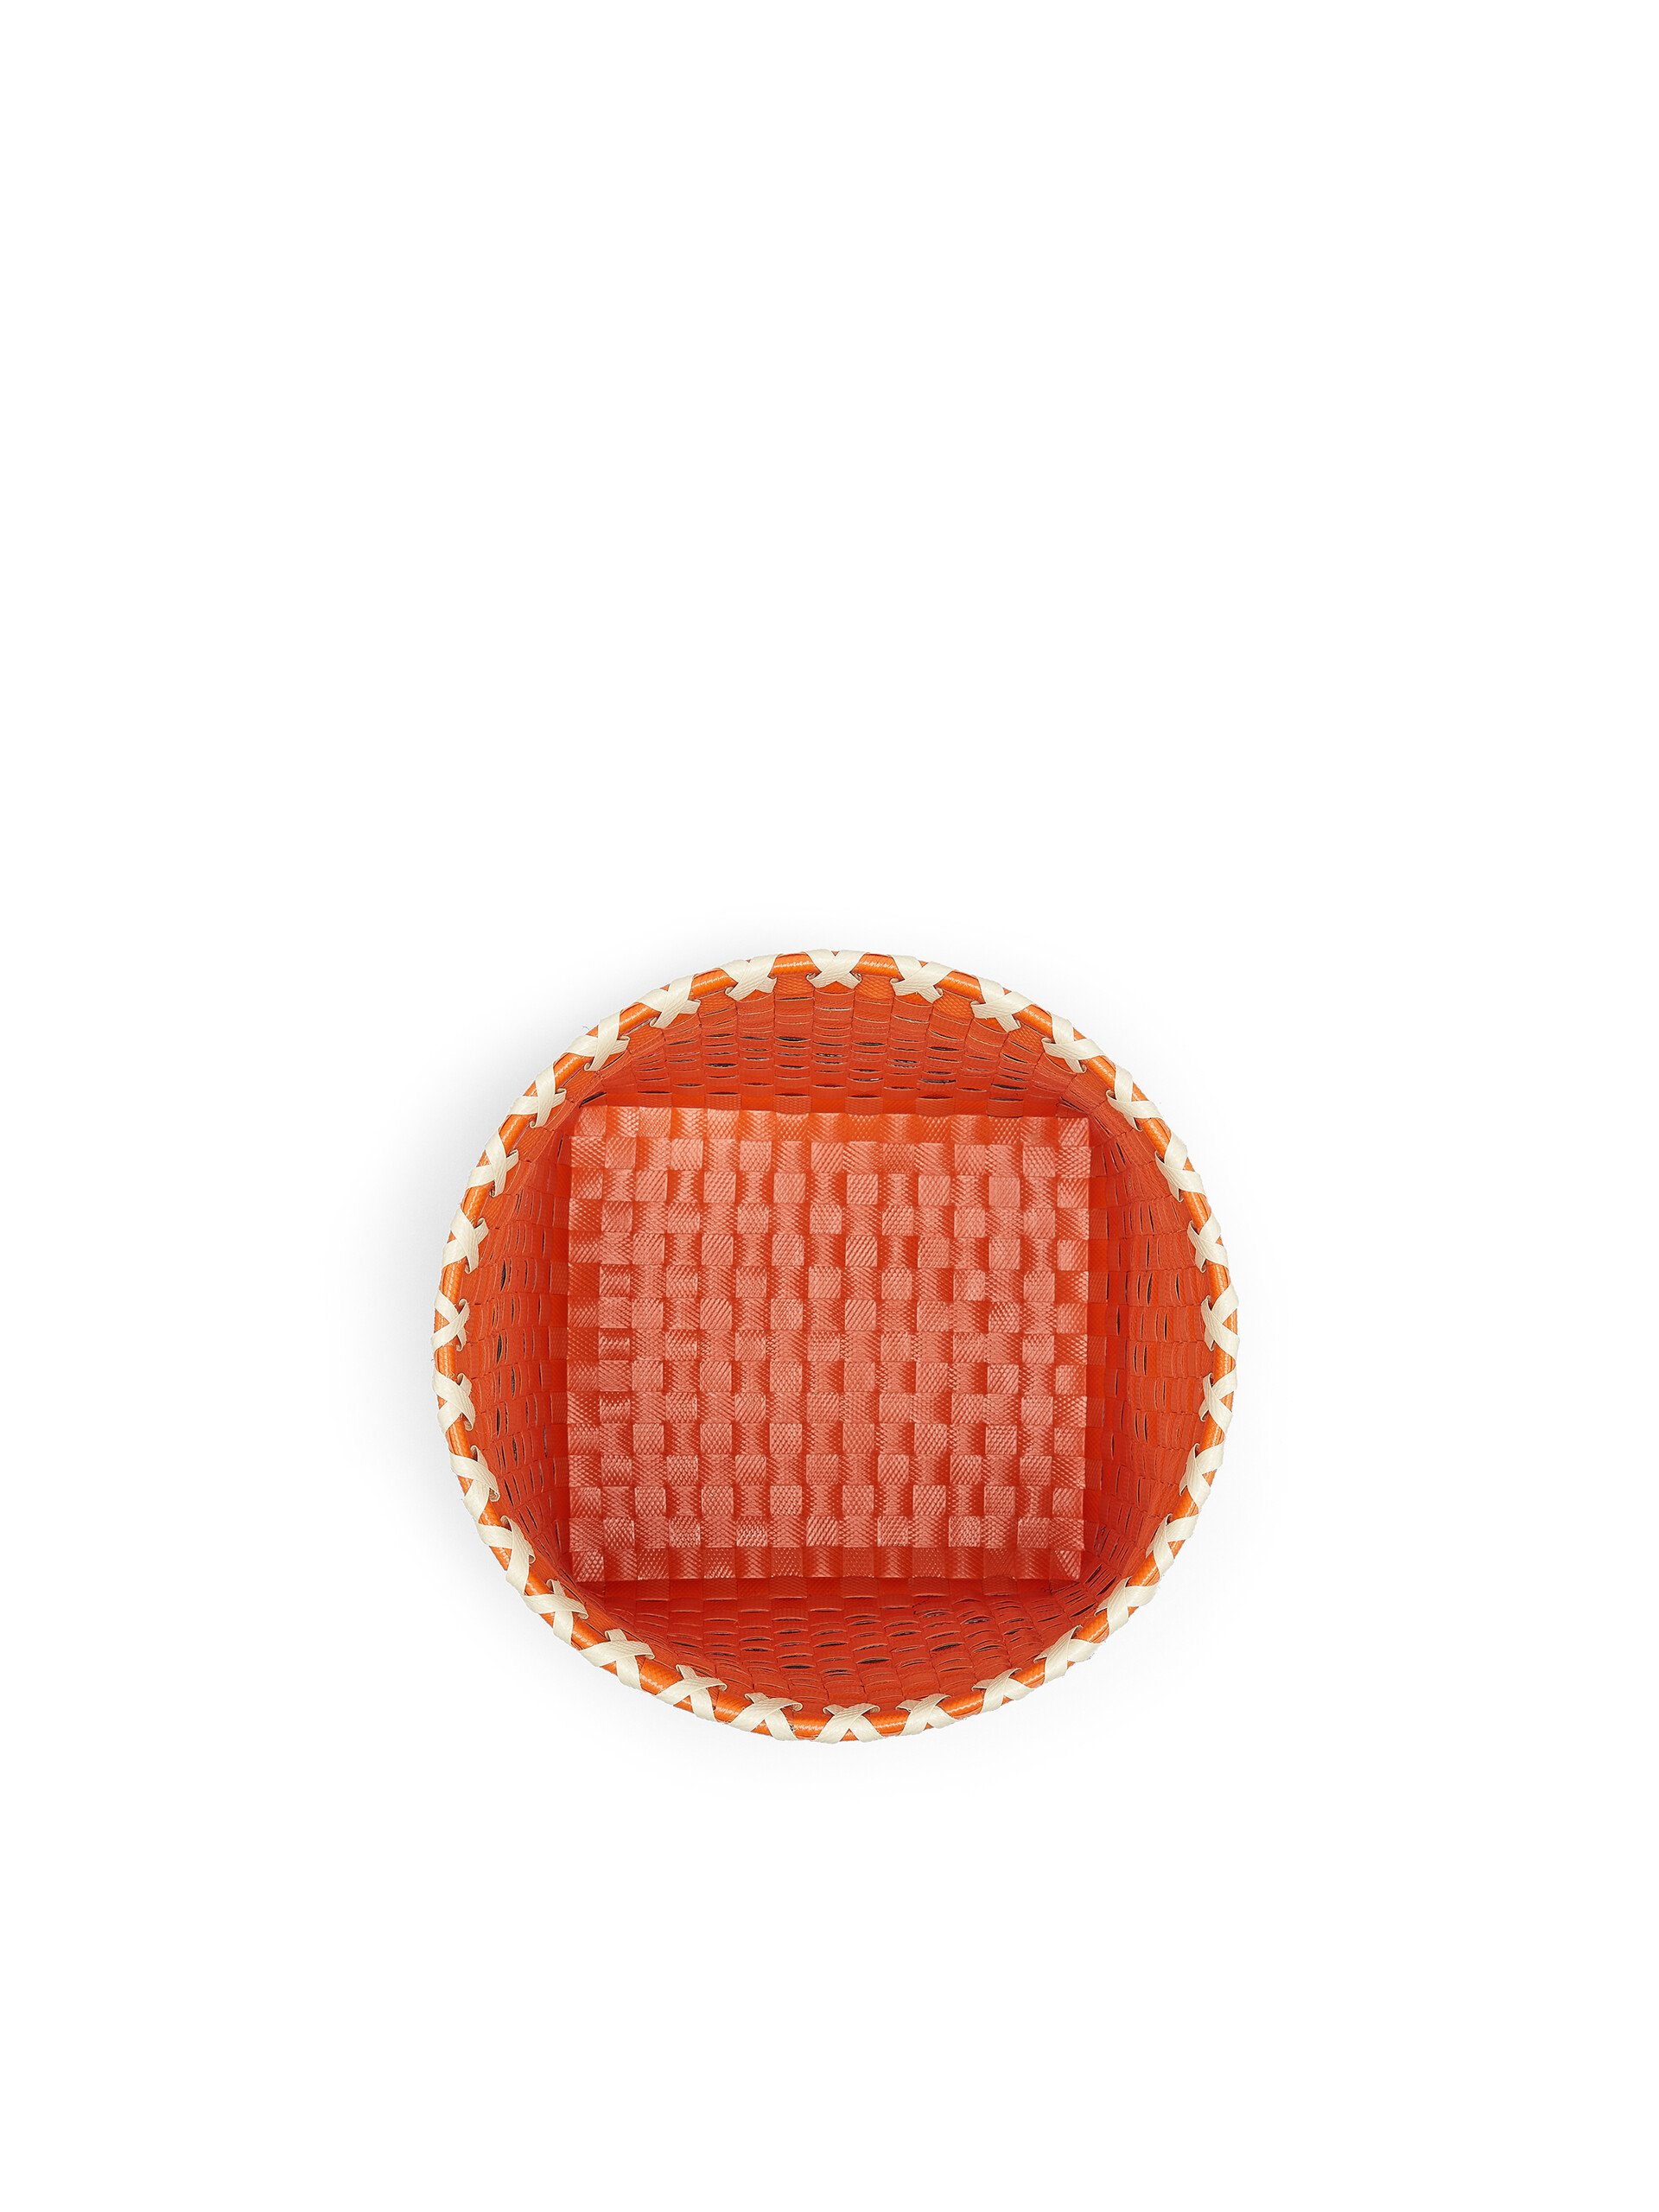 Cestino MARNI MARKET in PVC intrecciato arancio nero e bianco - Home Accessories - Image 4